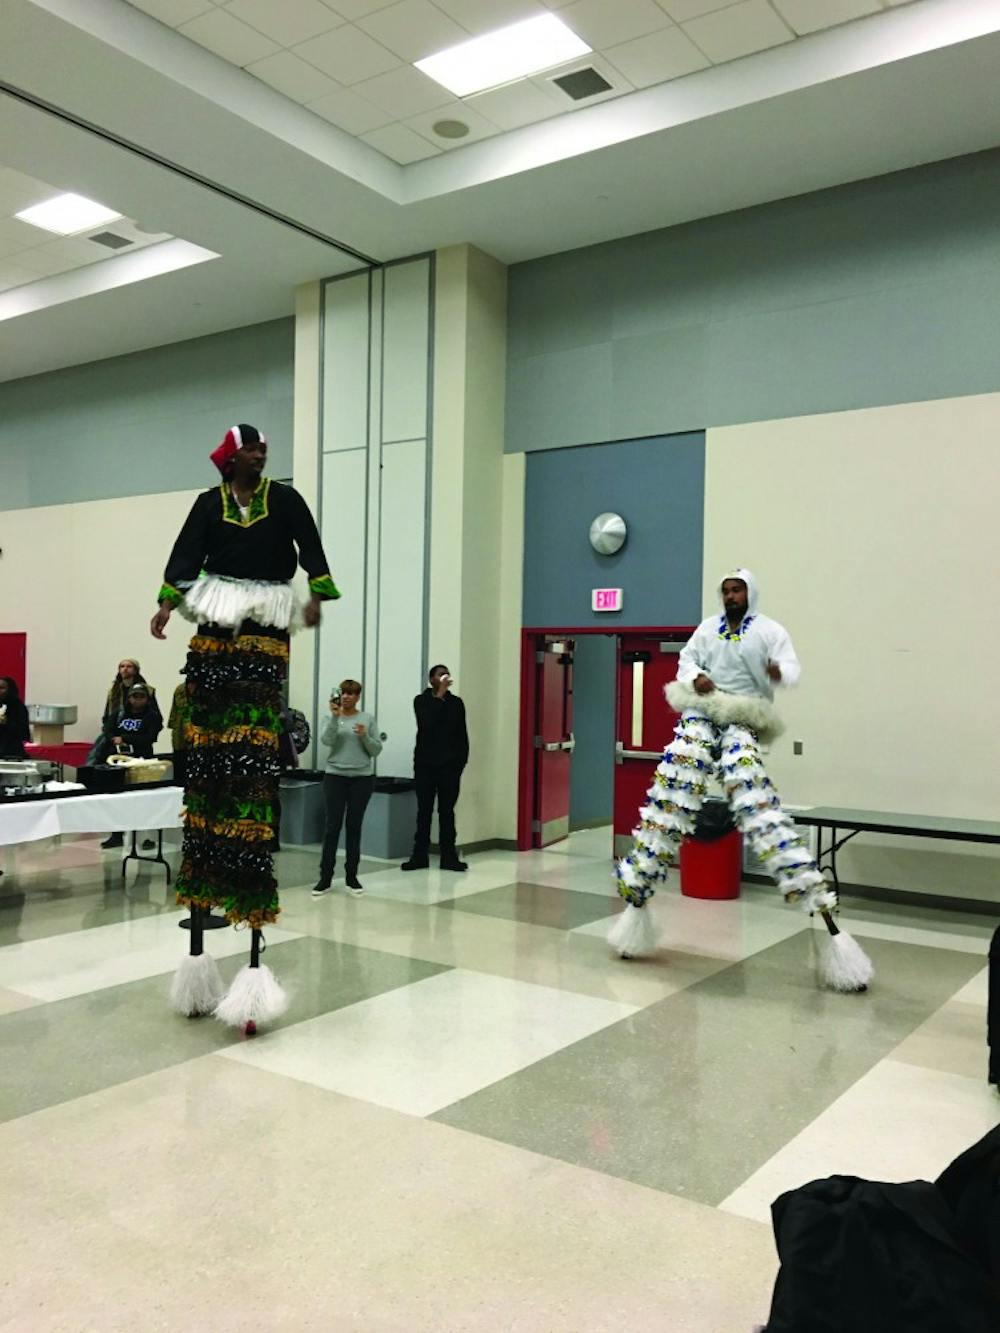 Diversity reaches new heights through Kwanzaa celebration